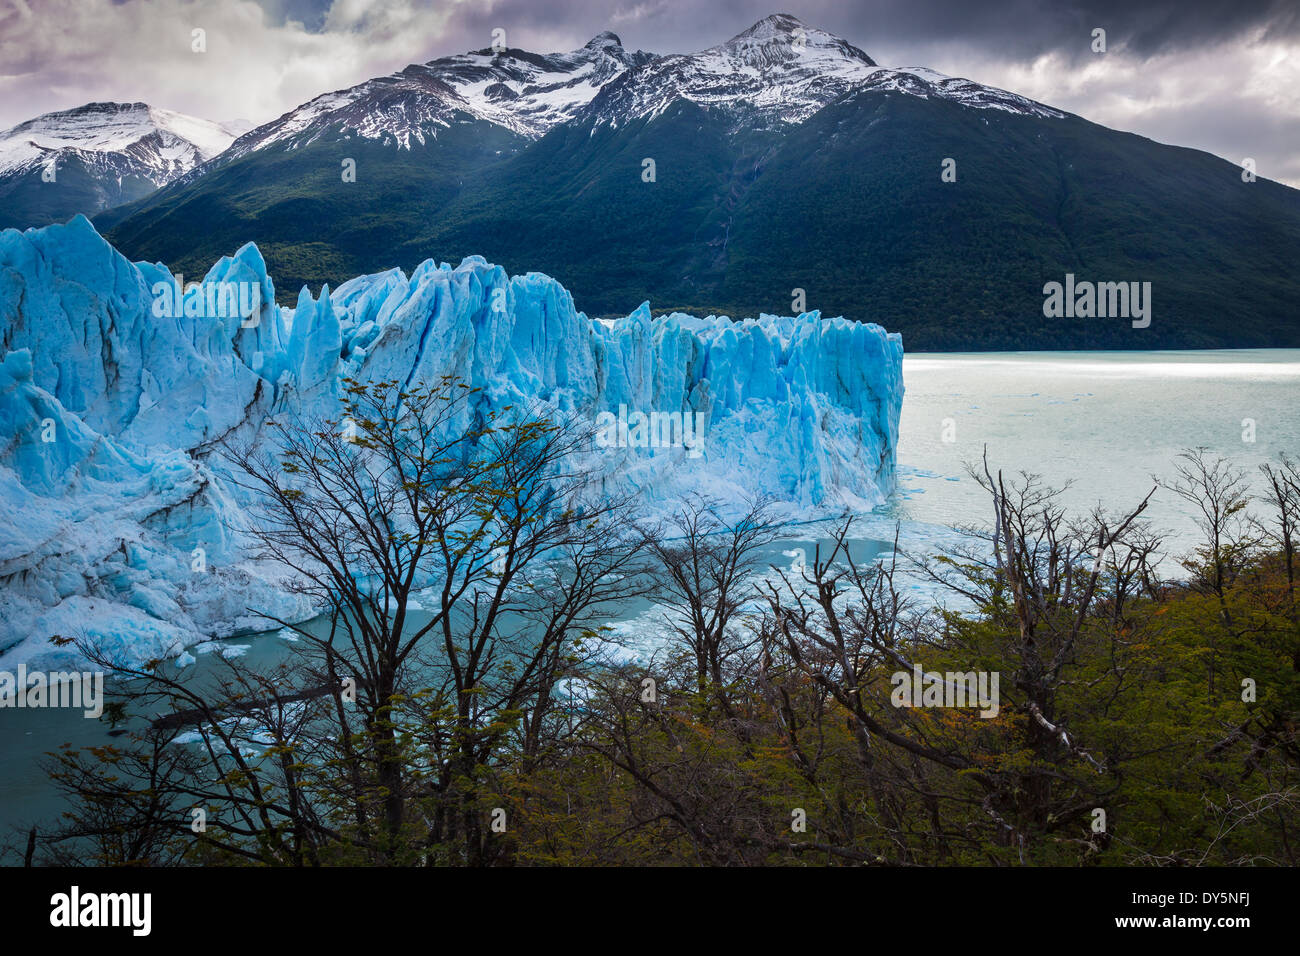 Der Perito-Moreno-Gletscher ist ein Gletscher im Nationalpark Los Glaciares im Südwesten der Provinz Santa Cruz, Argentinien. Stockfoto